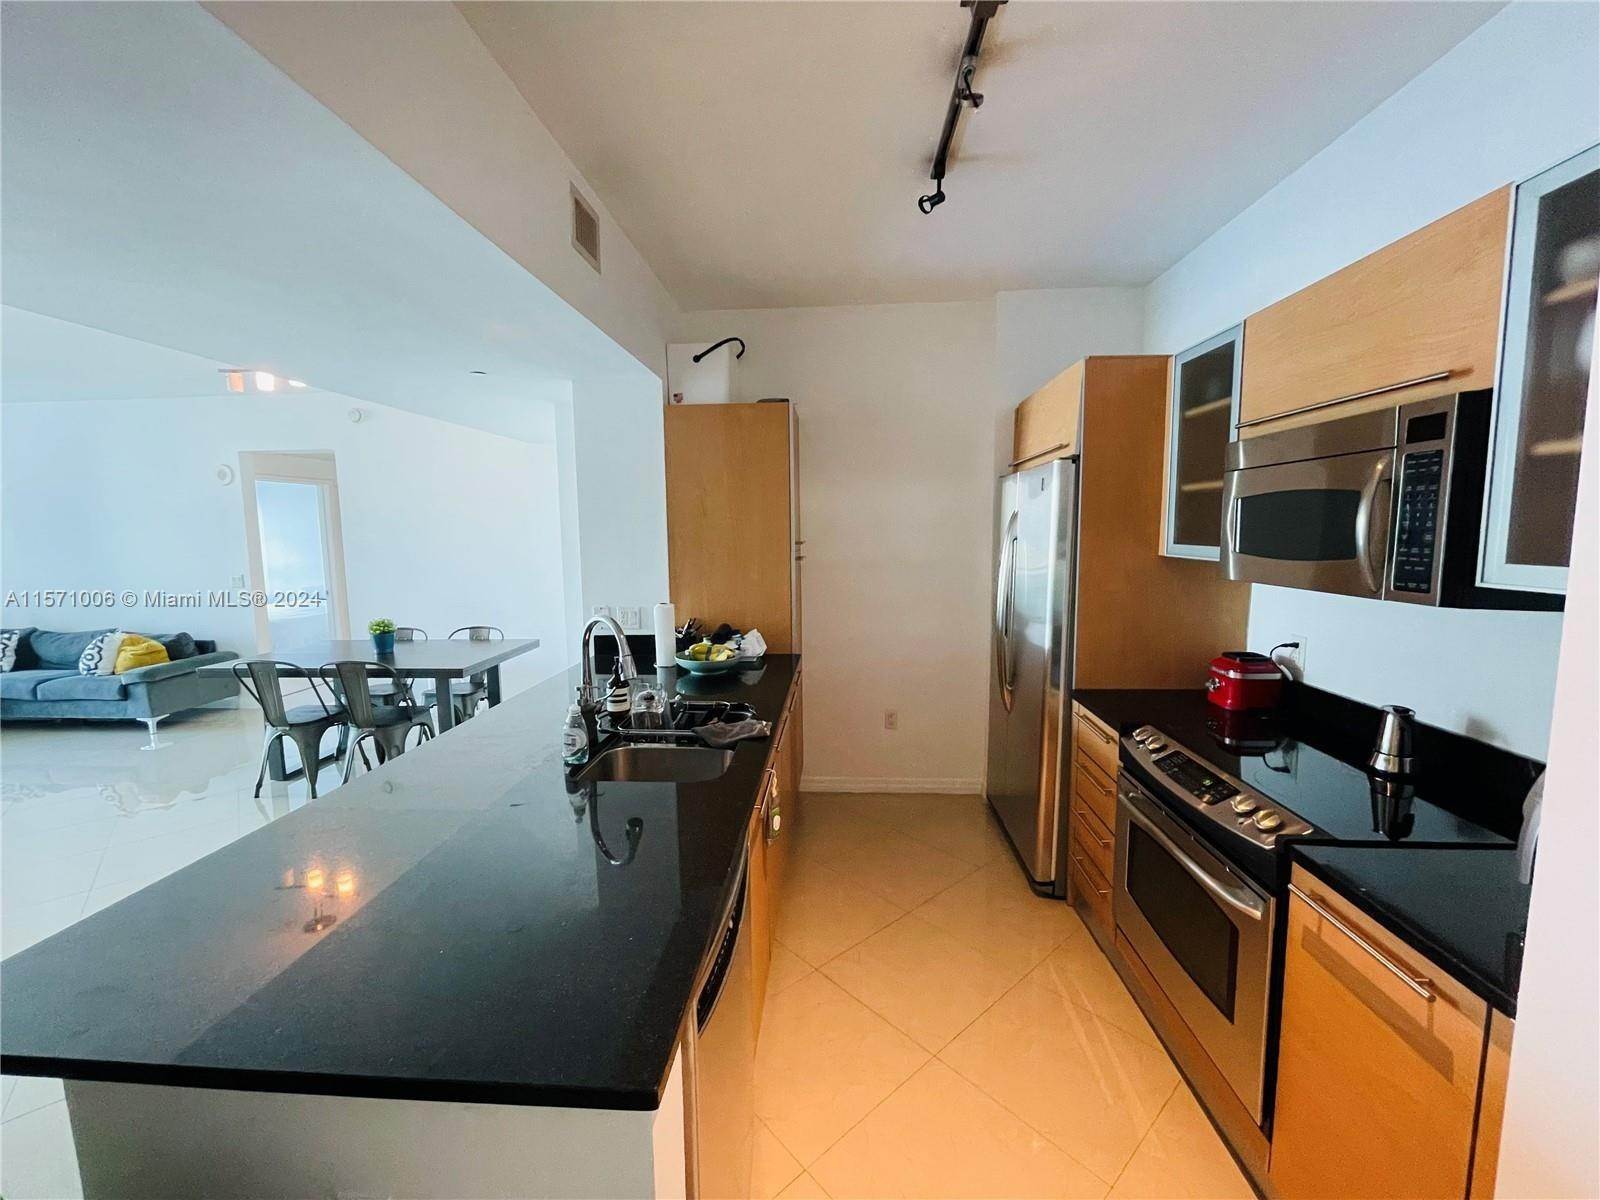 公寓 為 出售 在 Brickell, Miami, FL 33131